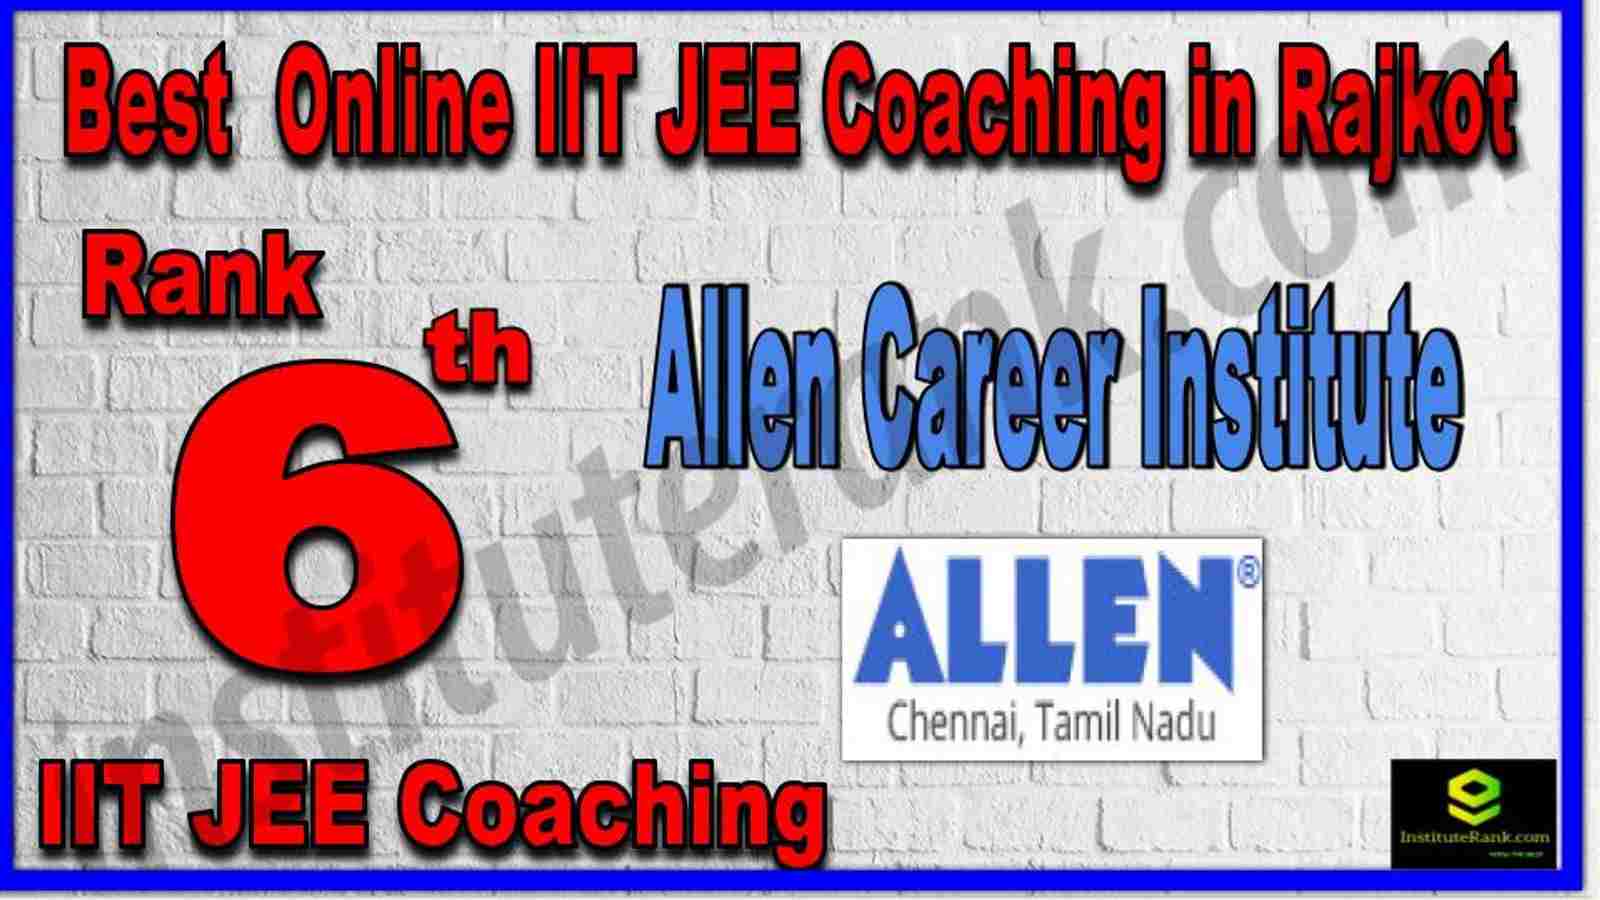 Rank 6th Best Online IIT JEE Coaching in Rajkot